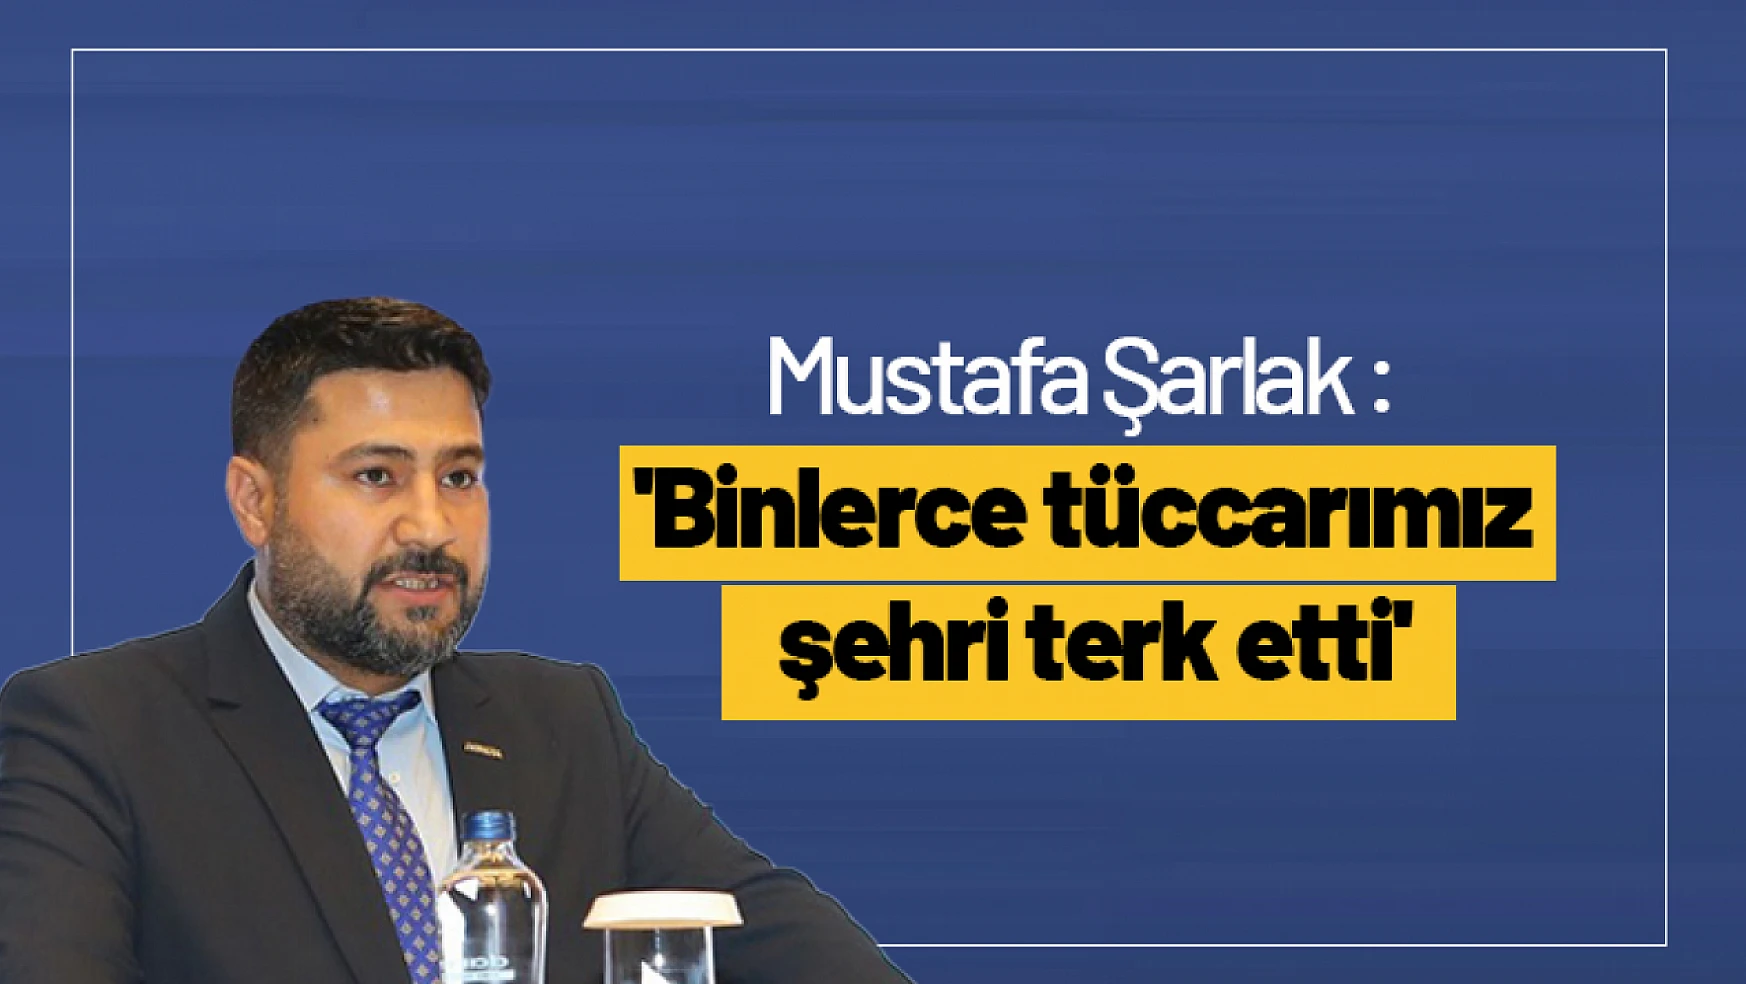 Mustafa Şarlak : 'Binlerce tüccarımız şehri terk etti'